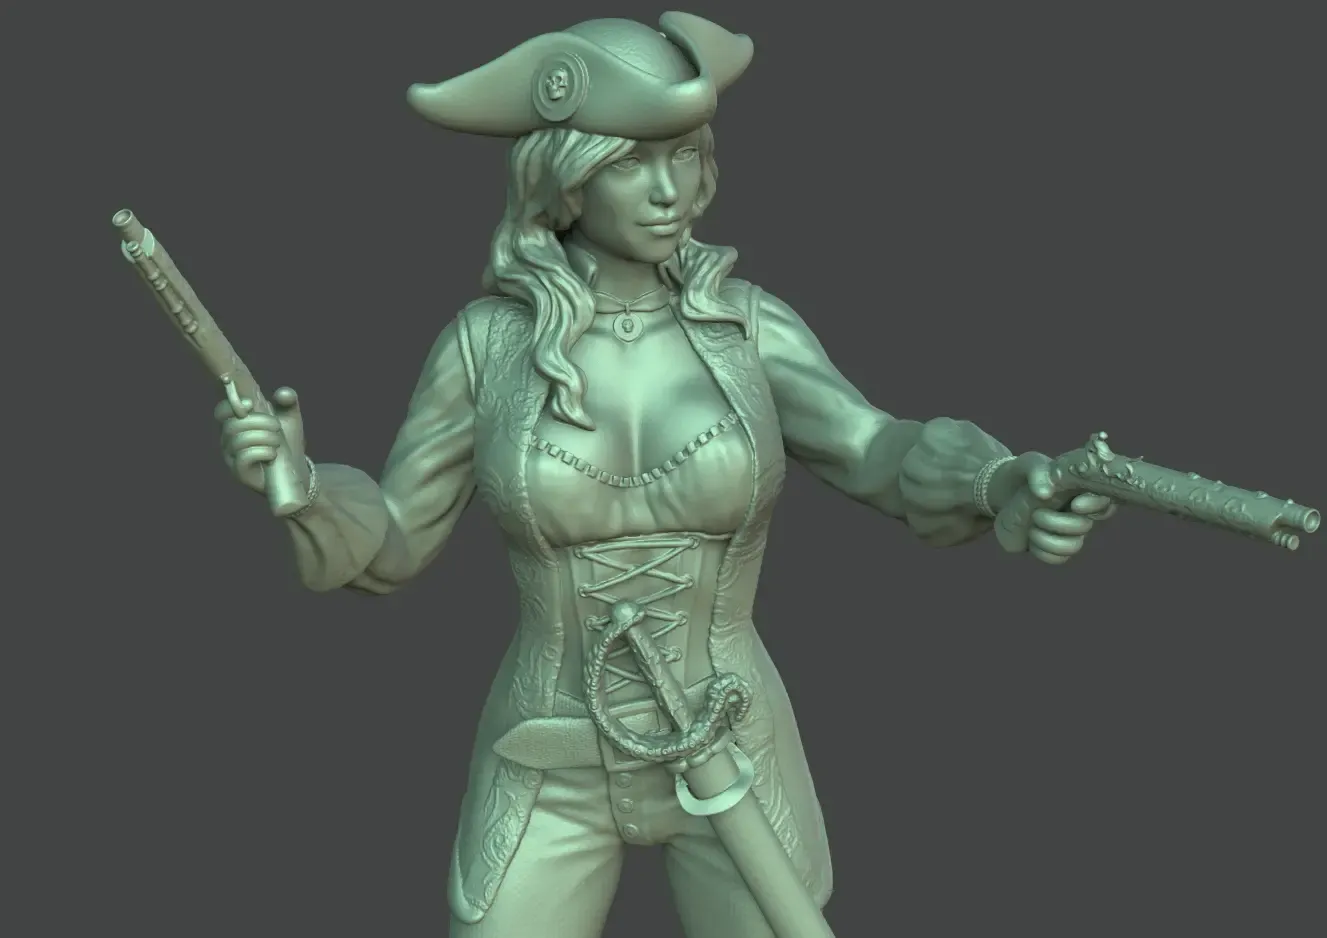 Female pirate